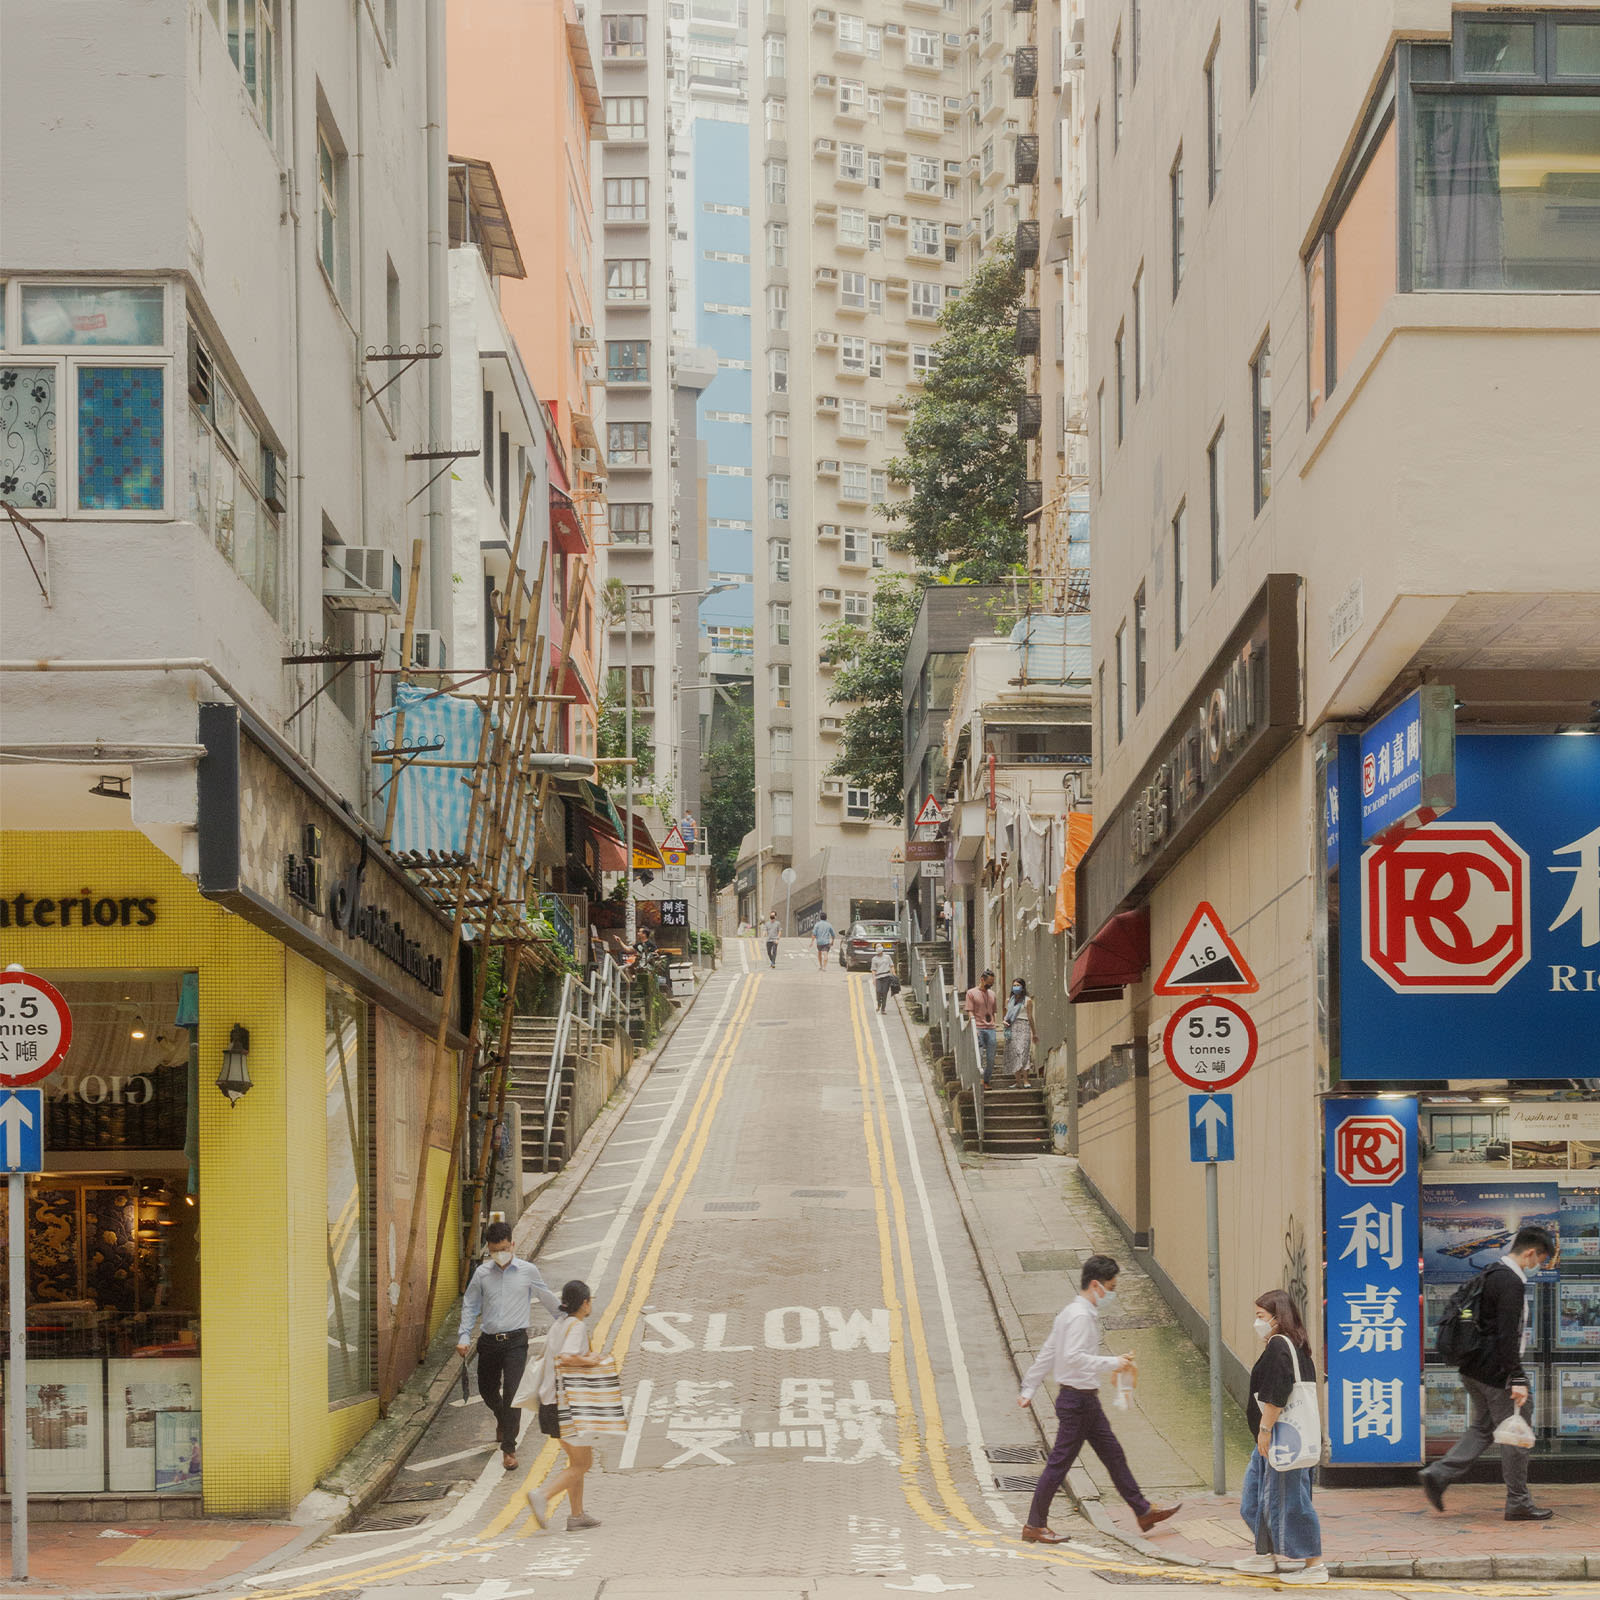 Star Street Precinct: Hong Kong's creative quarter